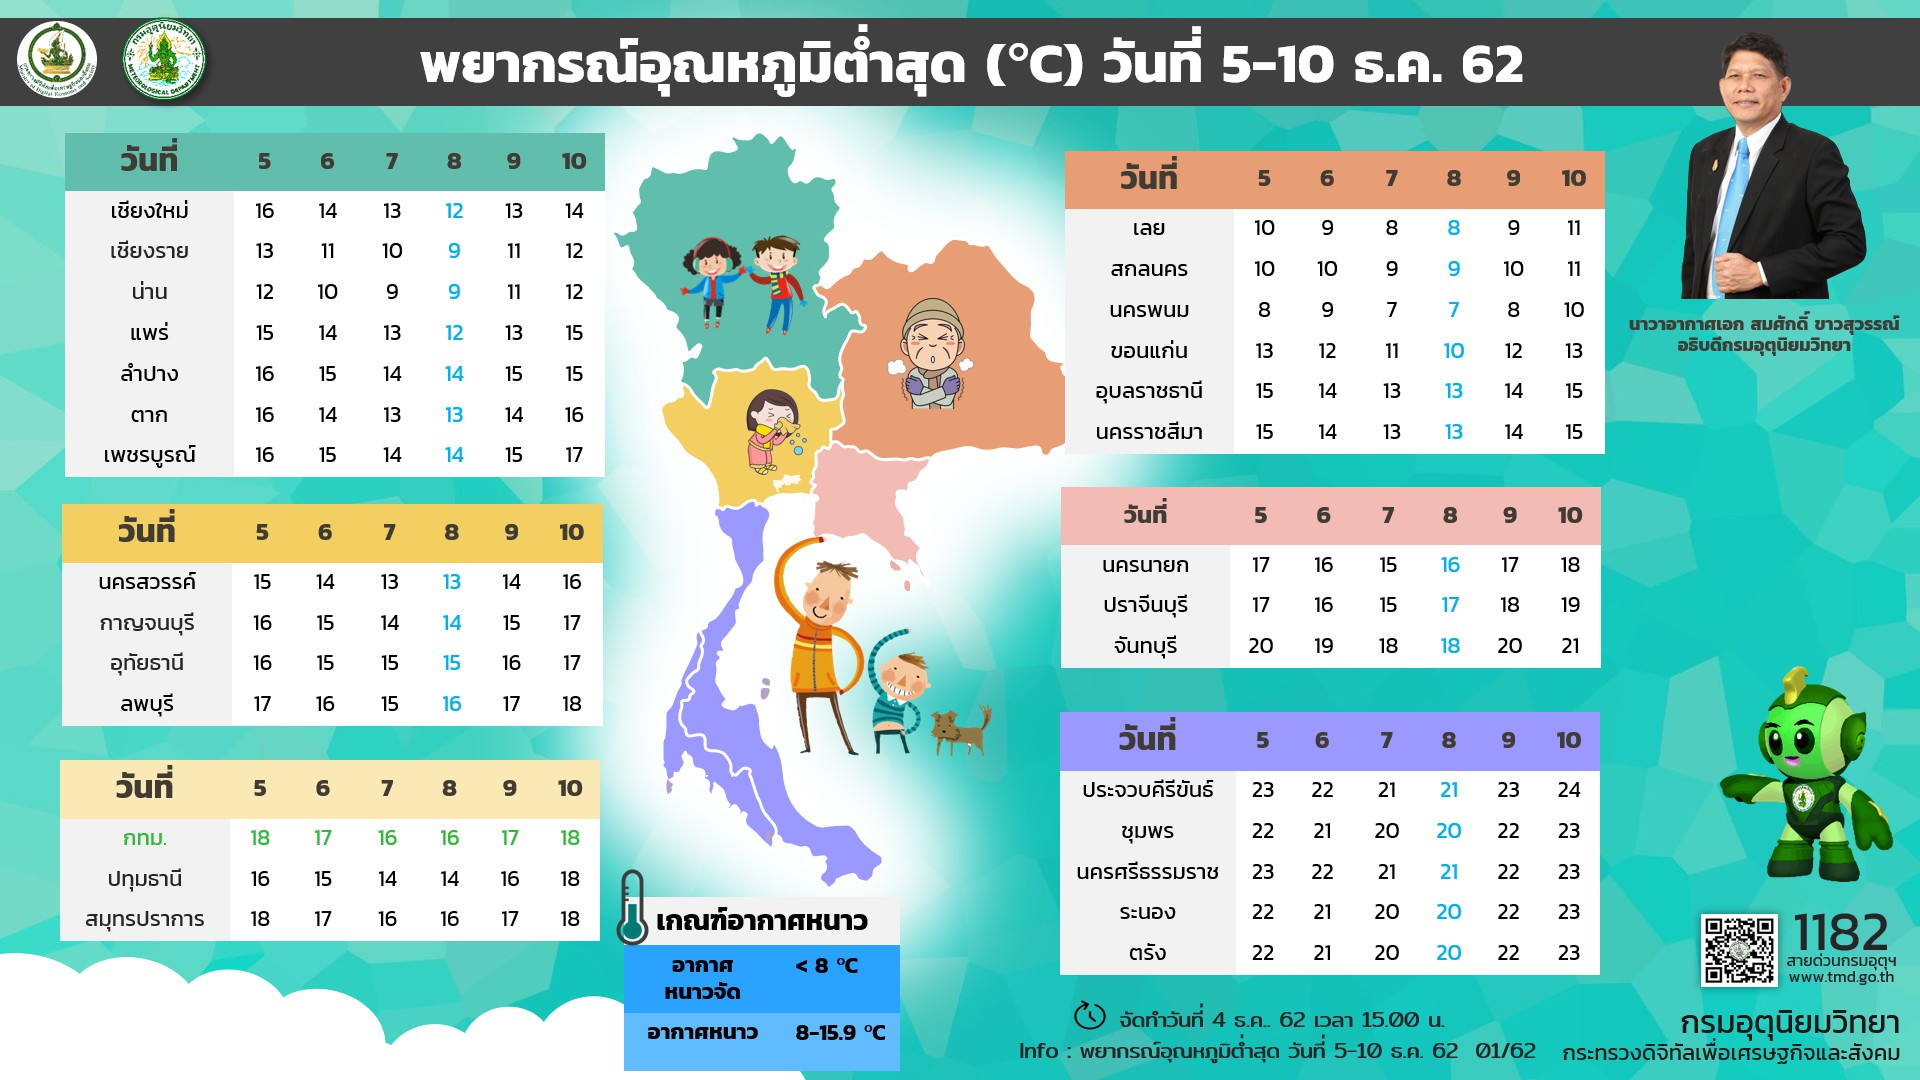 พยากรอุณหภูมิต่ำสุดทั่วไทยระหว่างวันที่ 5-10 ธ.ค.นี้ (ภาพจาก กรมอุตุนิยมวิทยาของไทย)